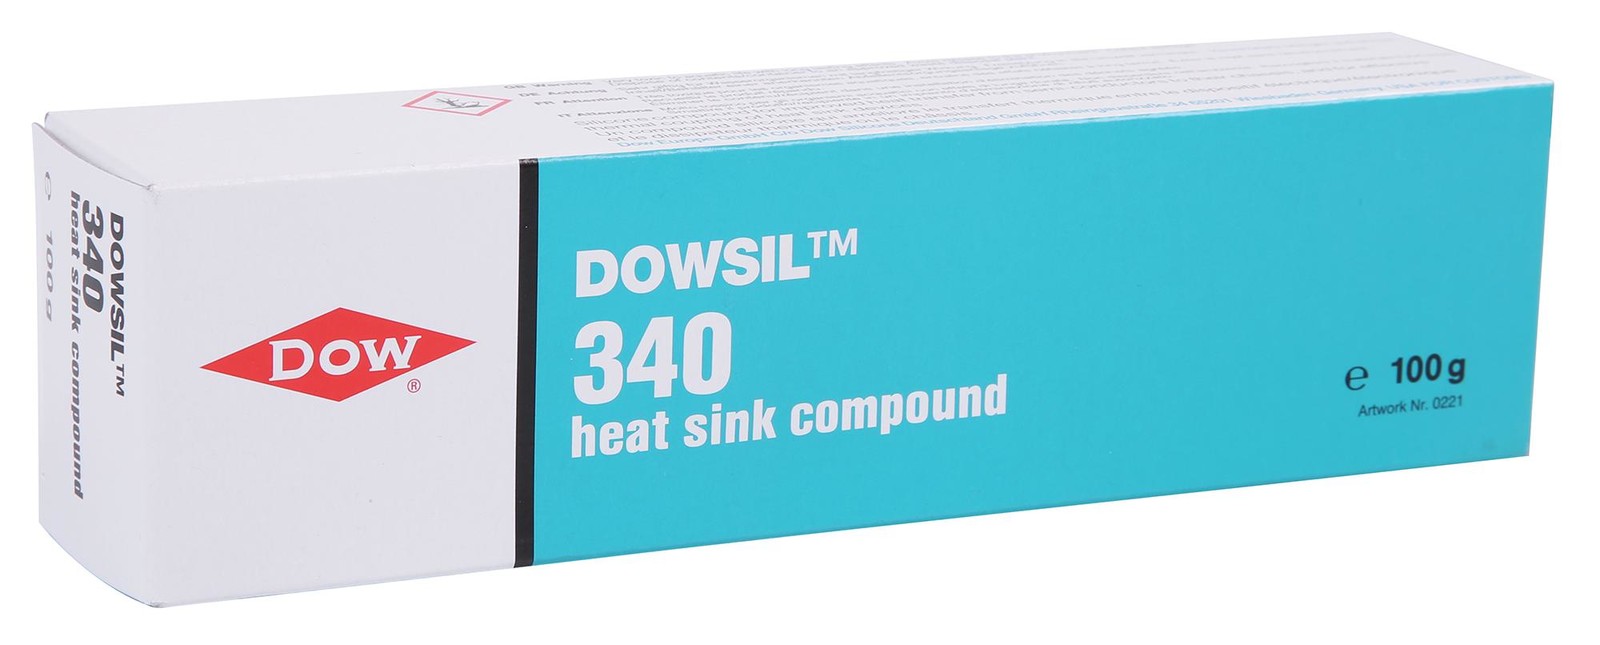 Dow 340 Heat Sink Compound, Tube, 100G, 340